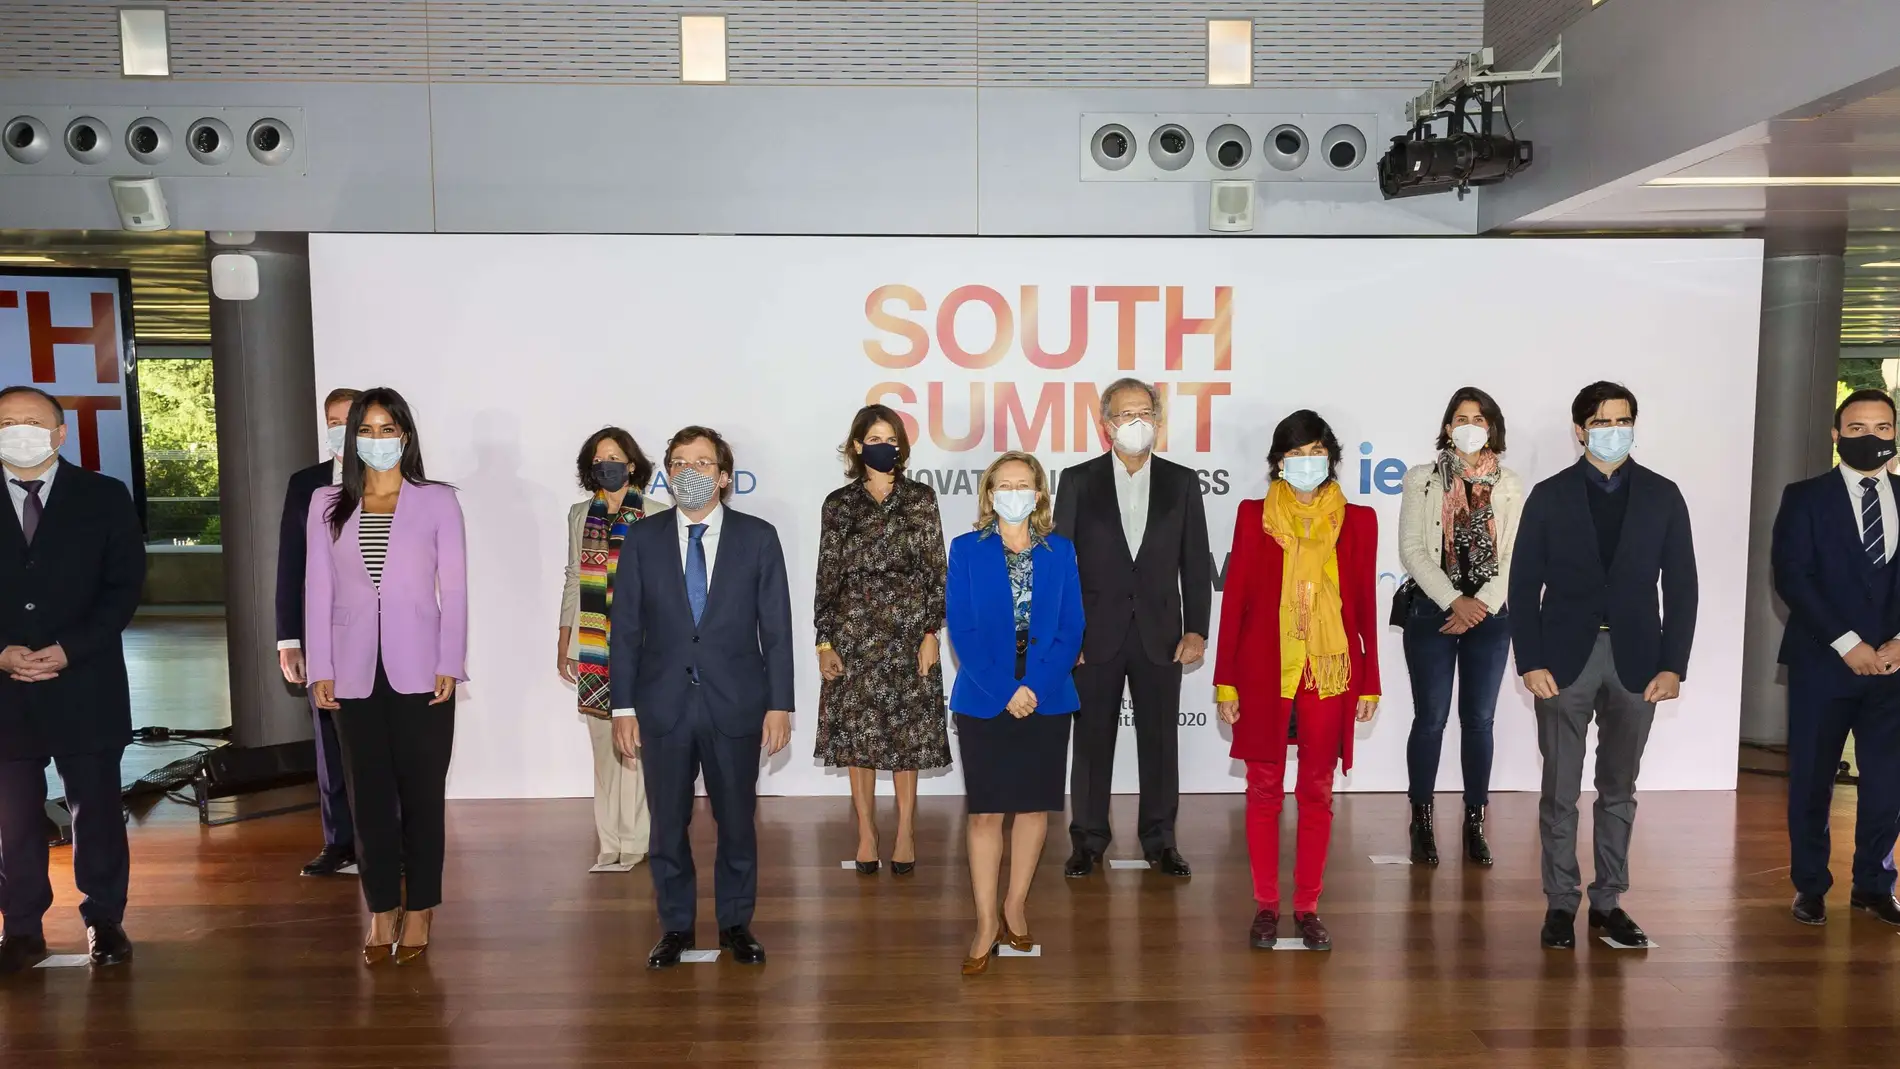 La vicepresidenta tercera y ministra de Asuntos Económicos y Transformación Digital, Nadia Calviño (centro), presidió la inauguración del South Summit 2020